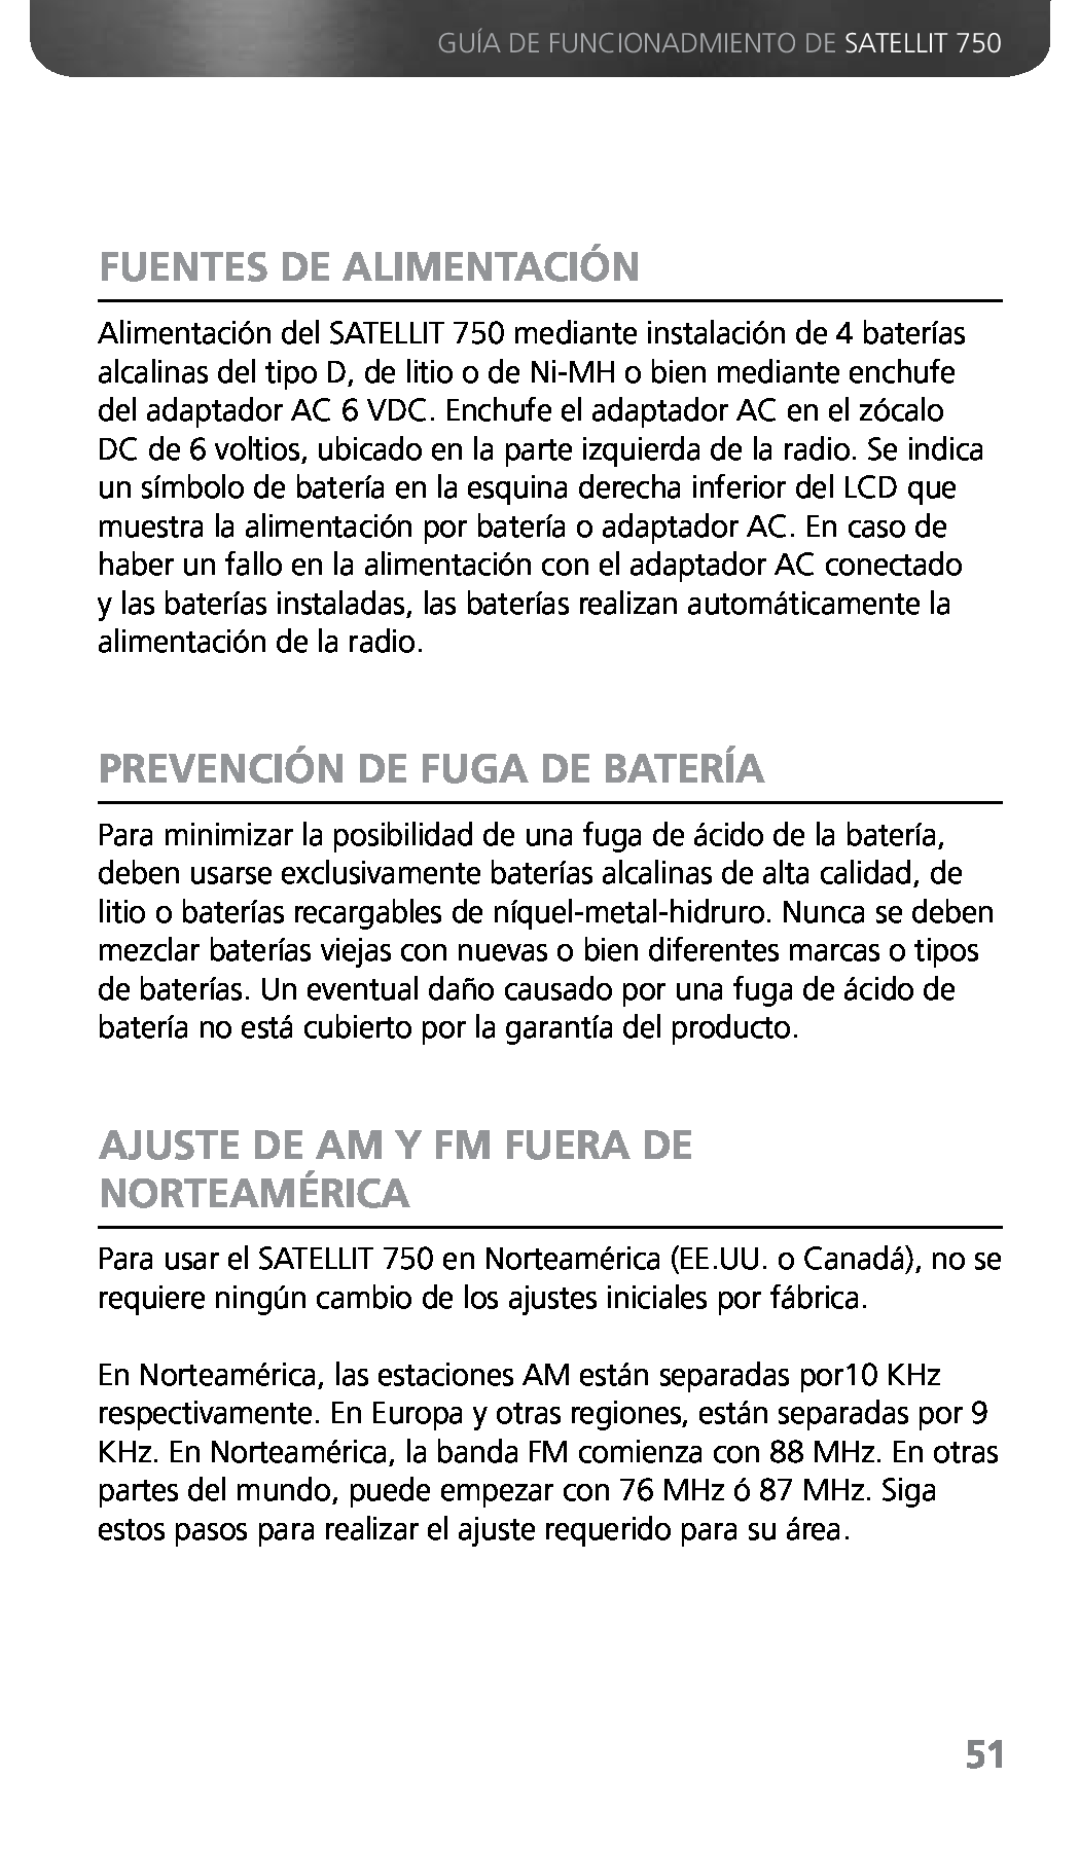 Grundig 750 owner manual Fuentes De Alimentación, Prevención De Fuga De Batería, Ajuste De Am Y Fm Fuera De Norteamérica 